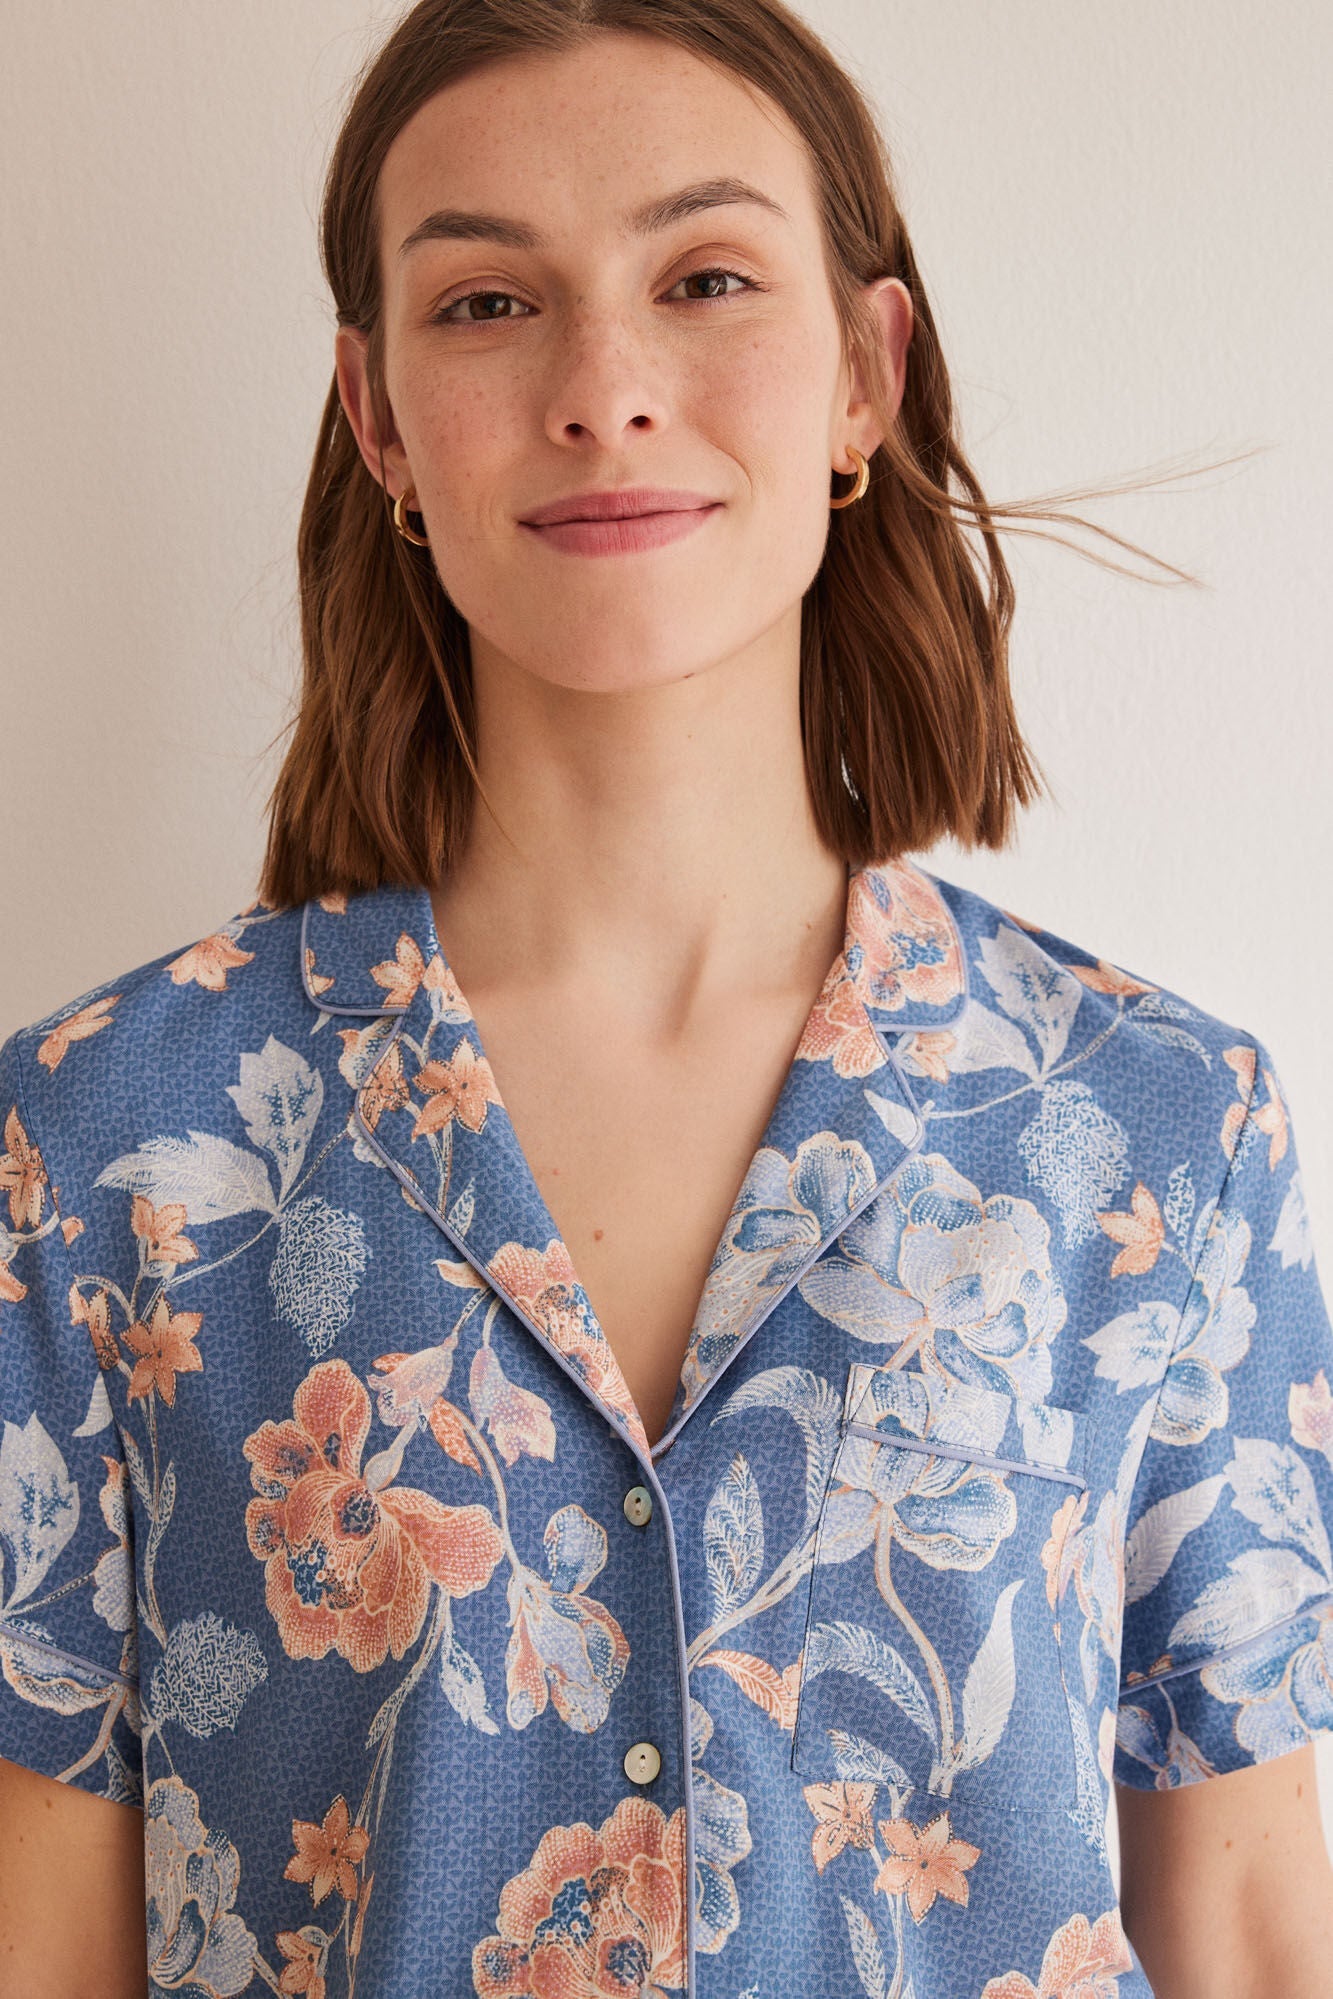 Capri shirt pajamas with blue flowers